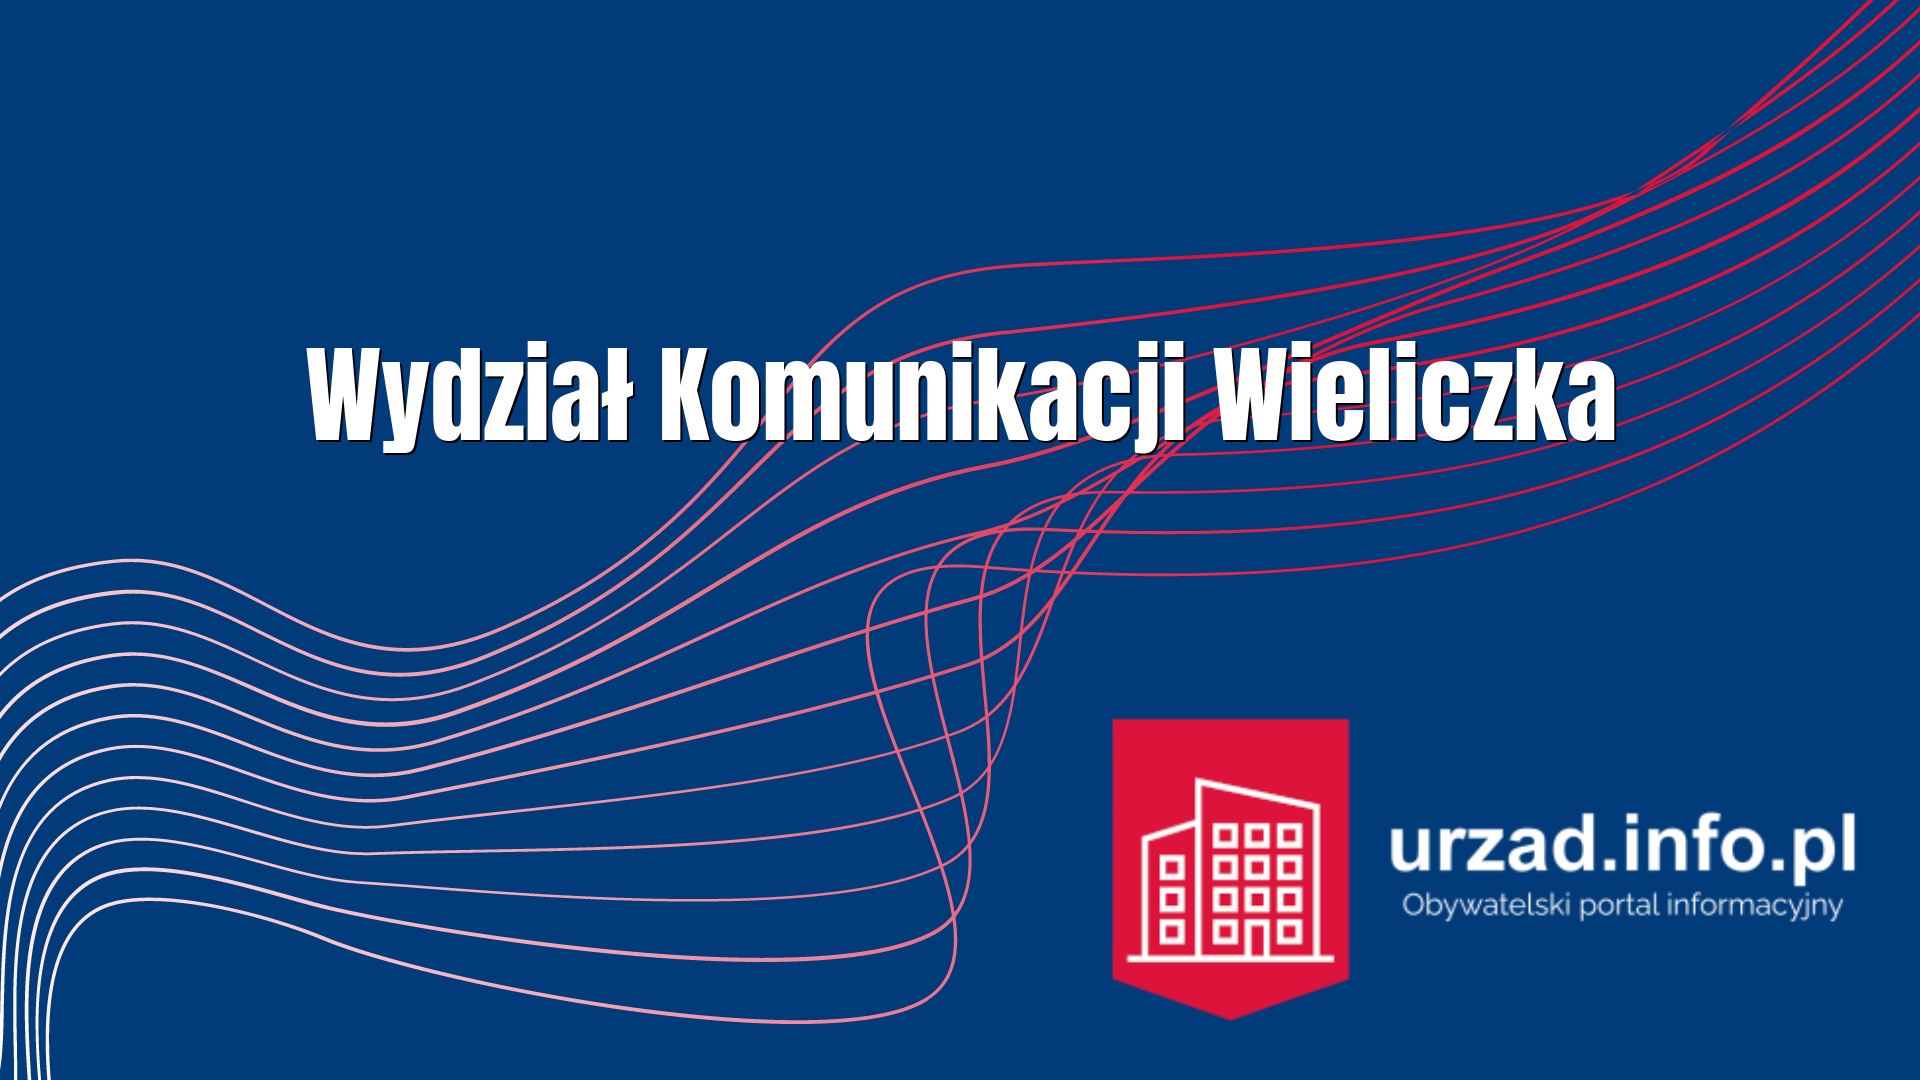 Wydział Komunikacji Wieliczka